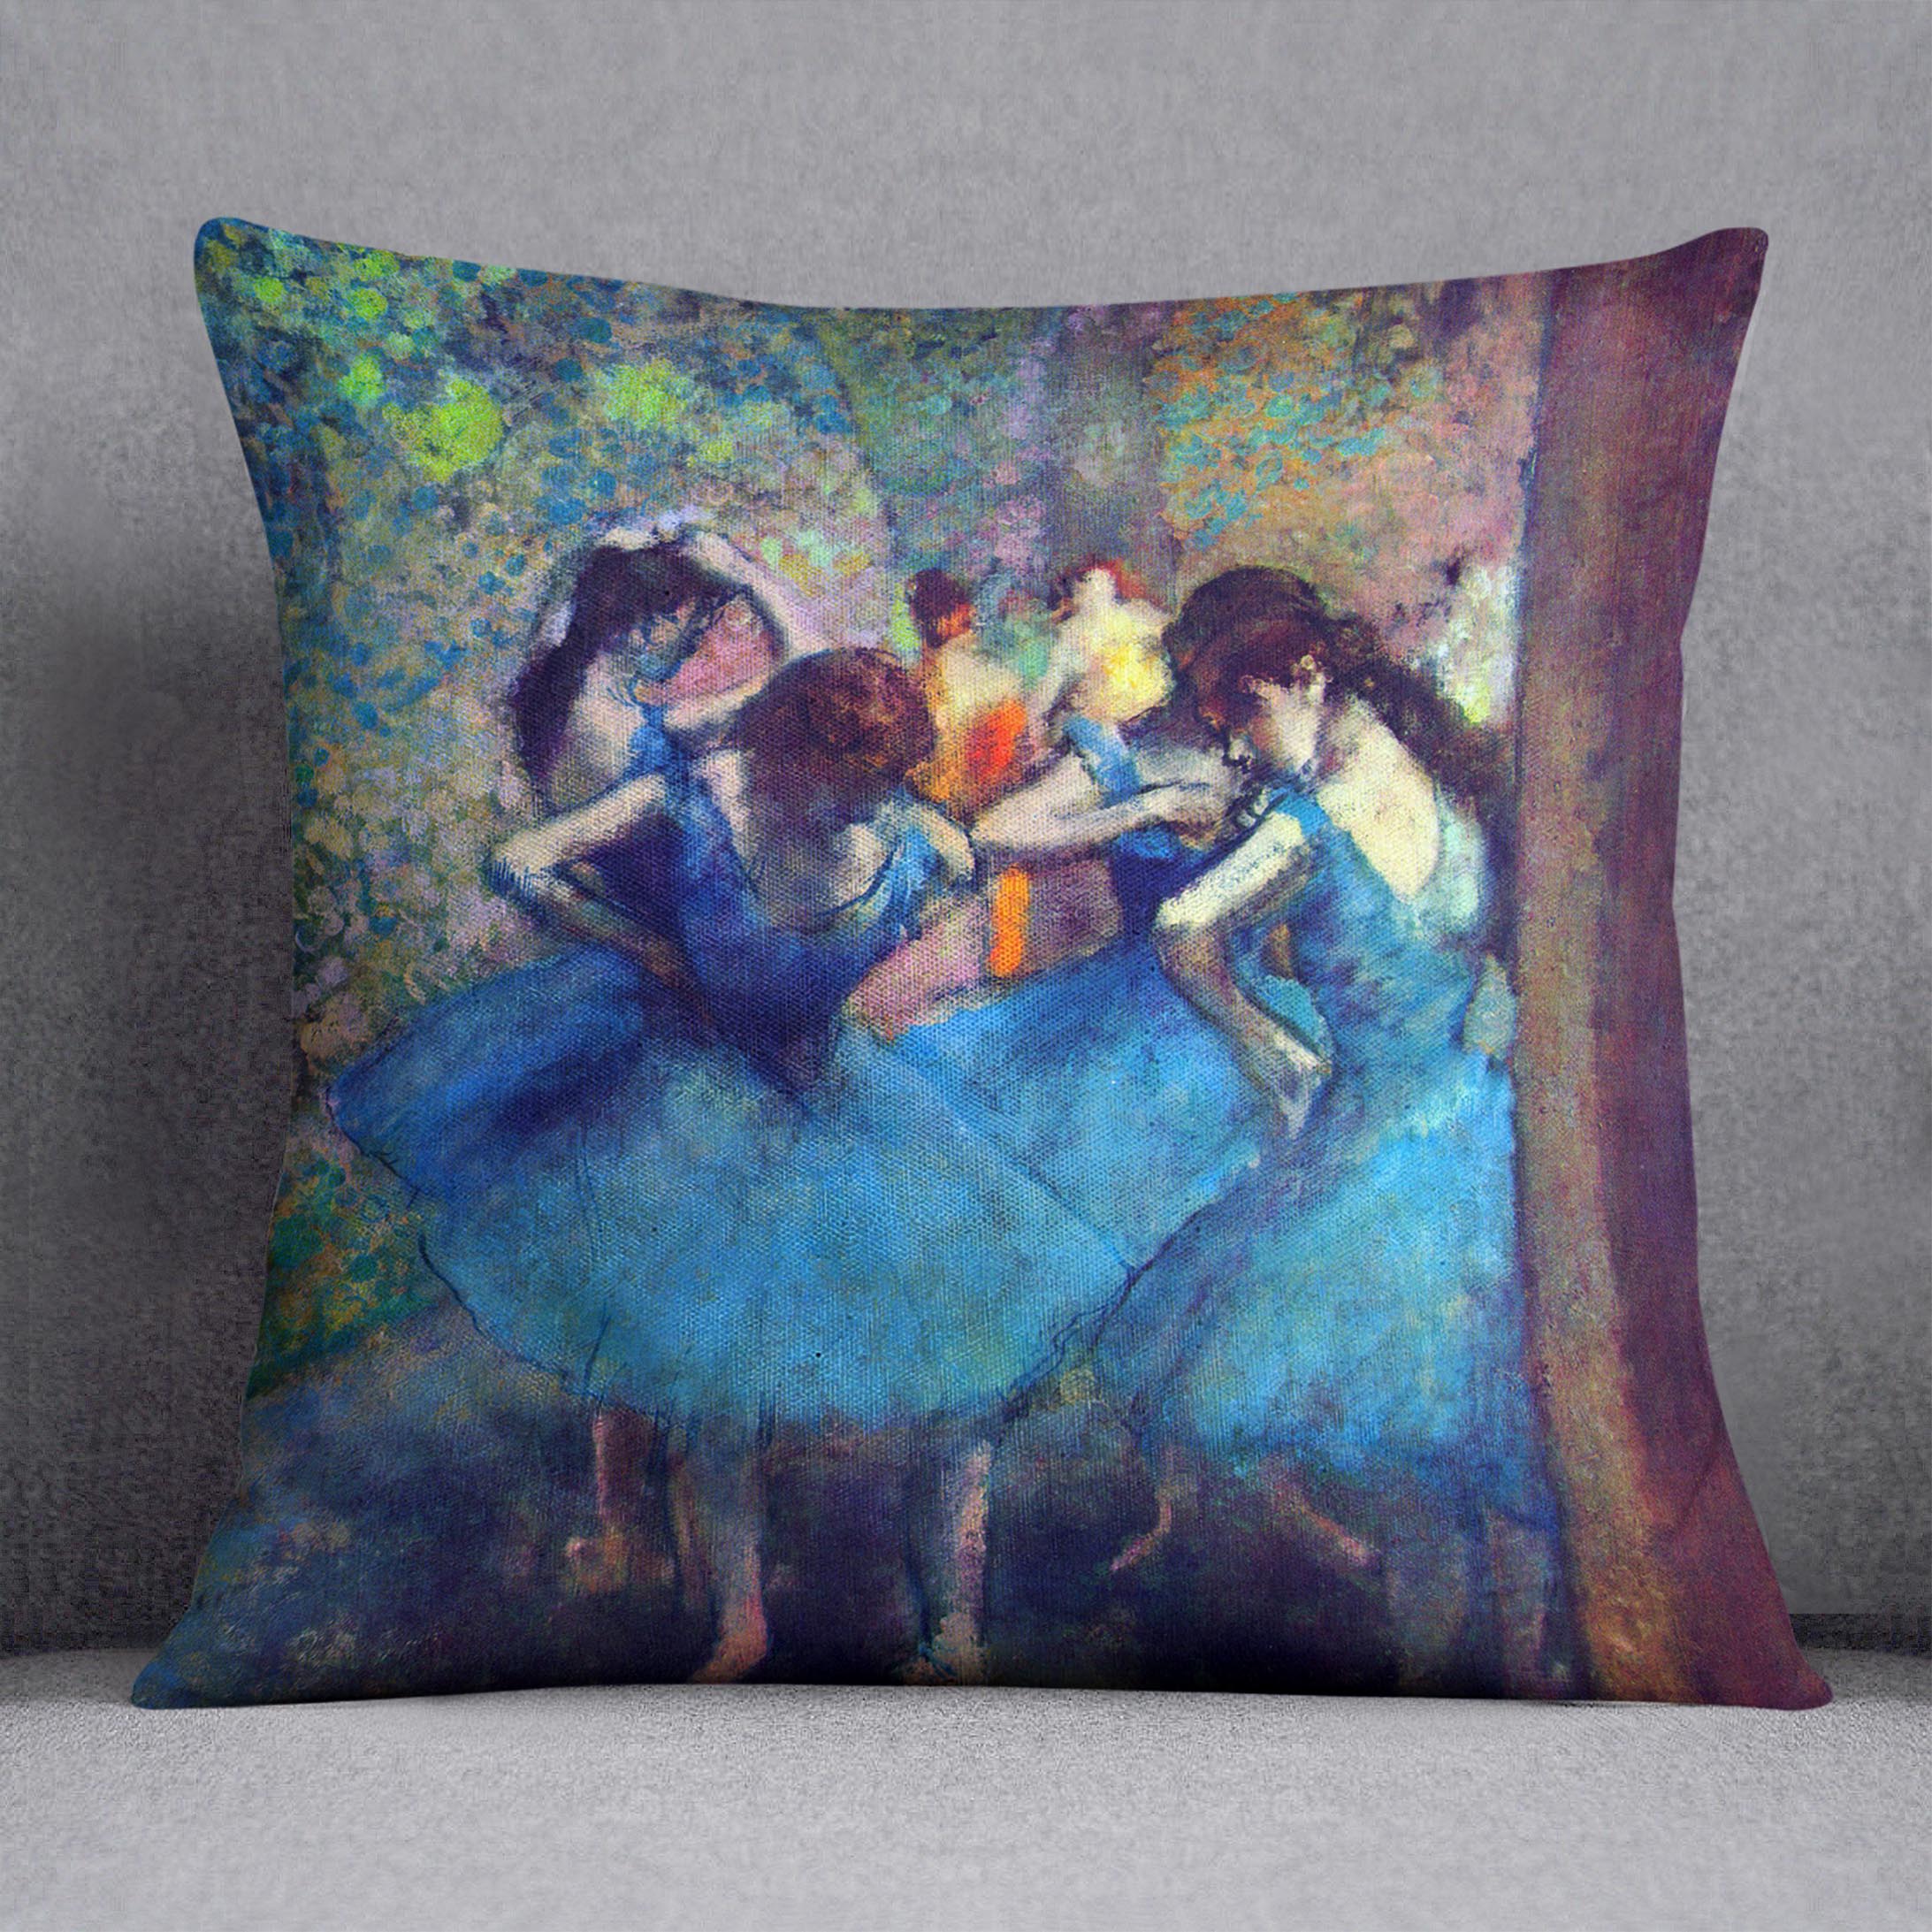 Dancers 1 by Degas Cushion